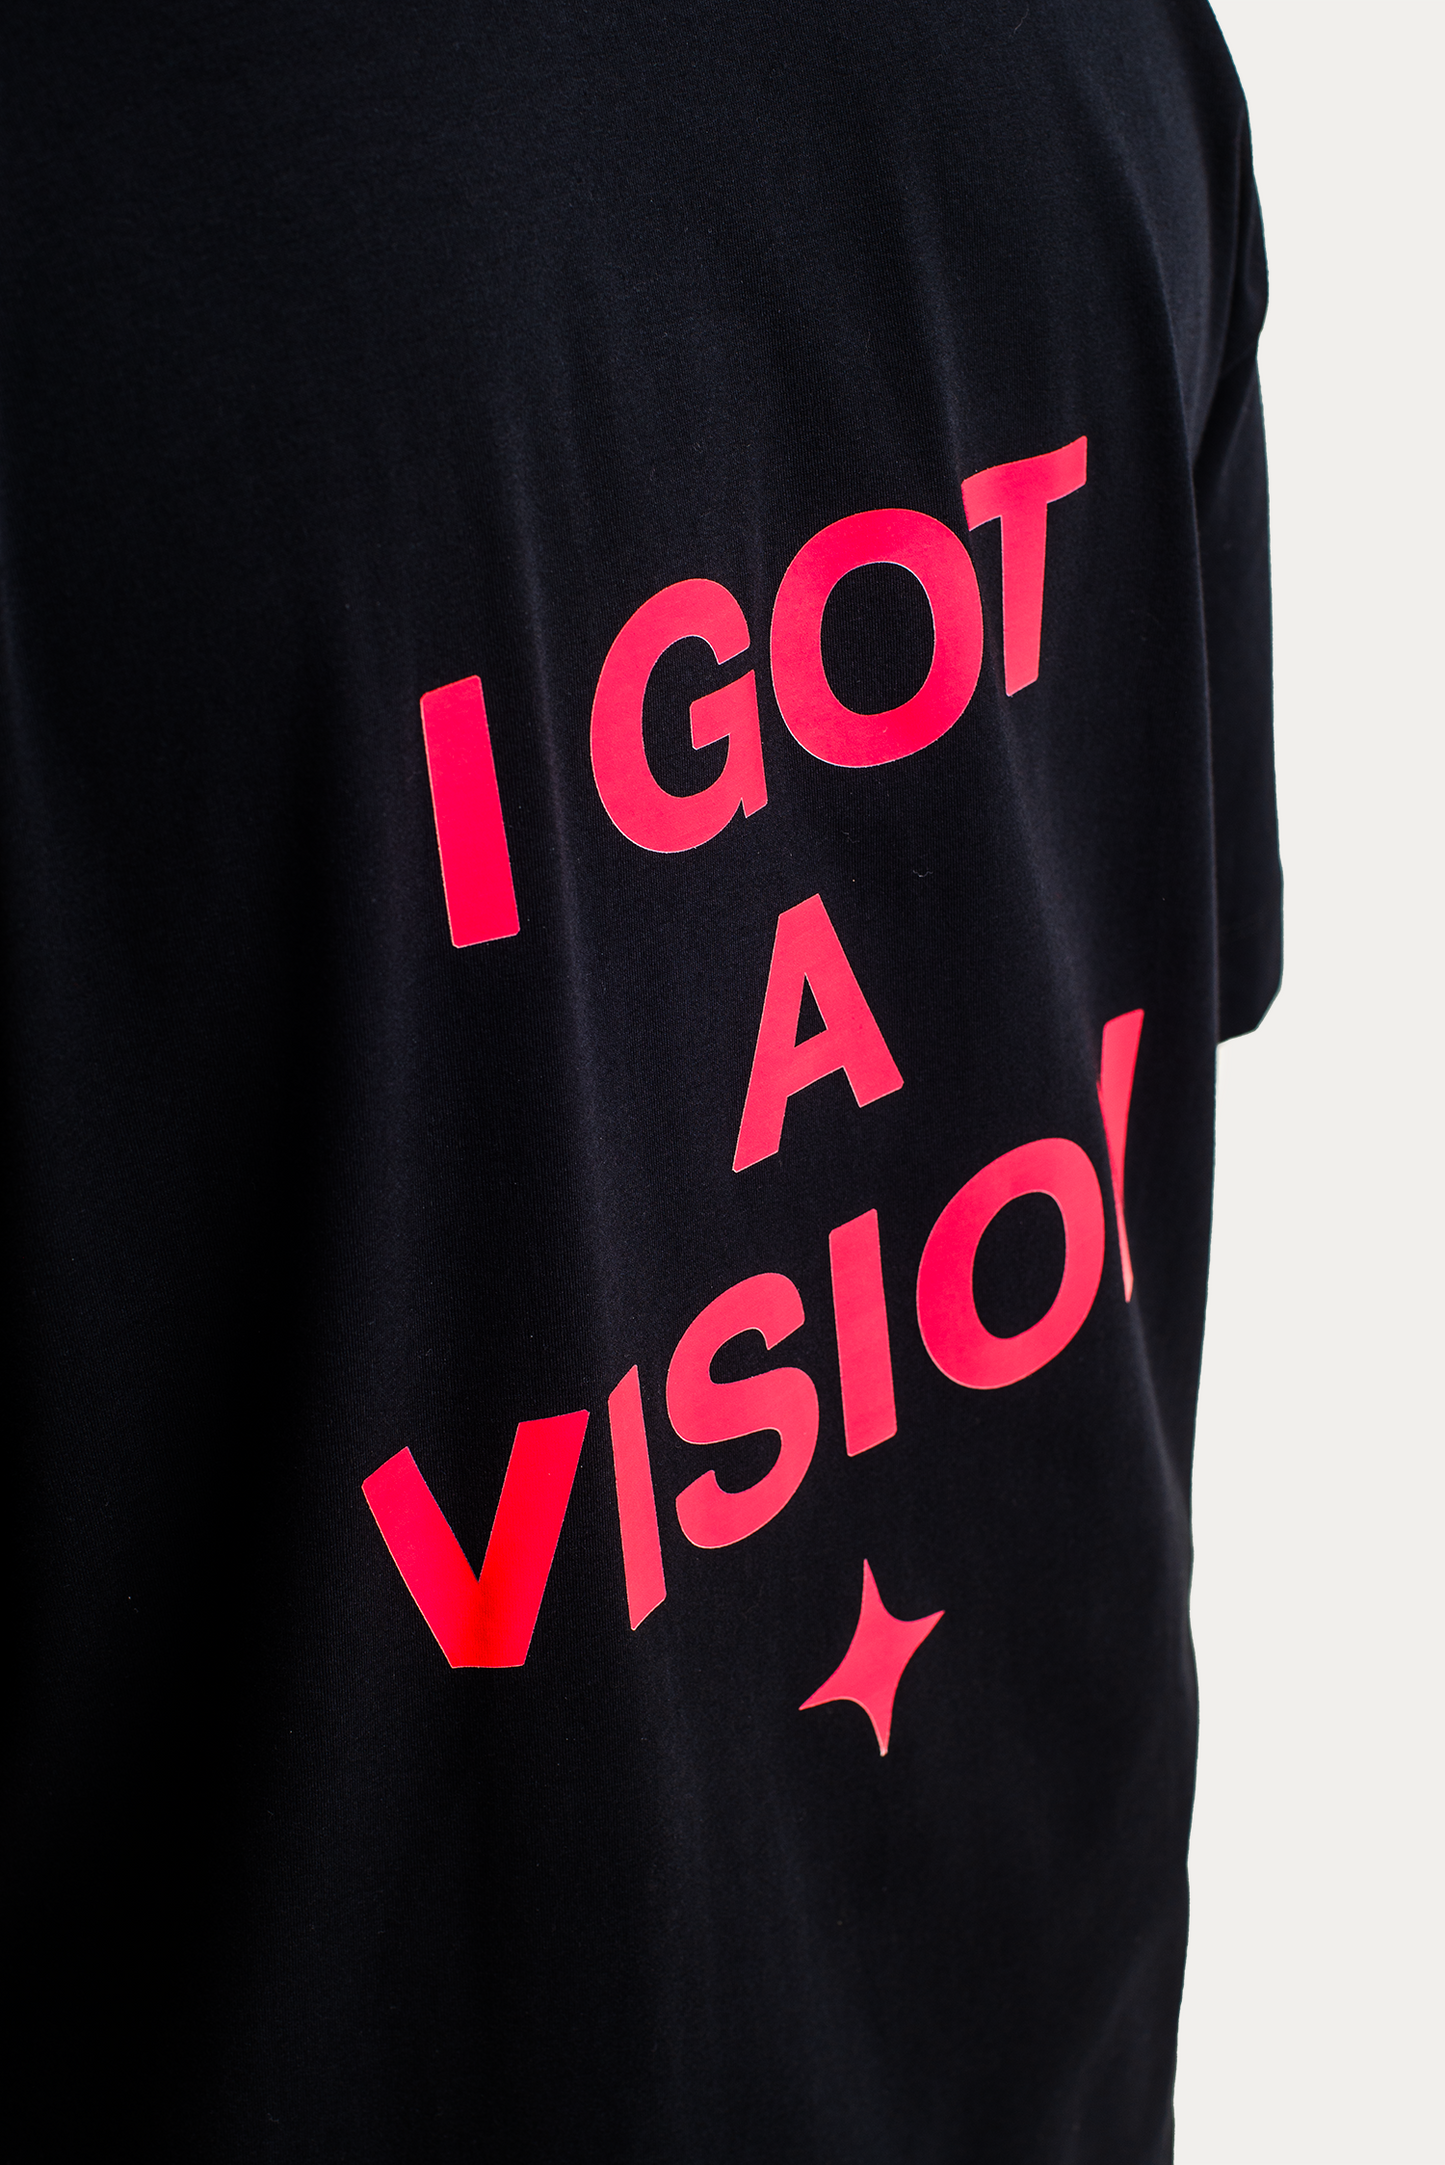 T-Shirt Over "I Got A Vision" - Preta/Vermelha